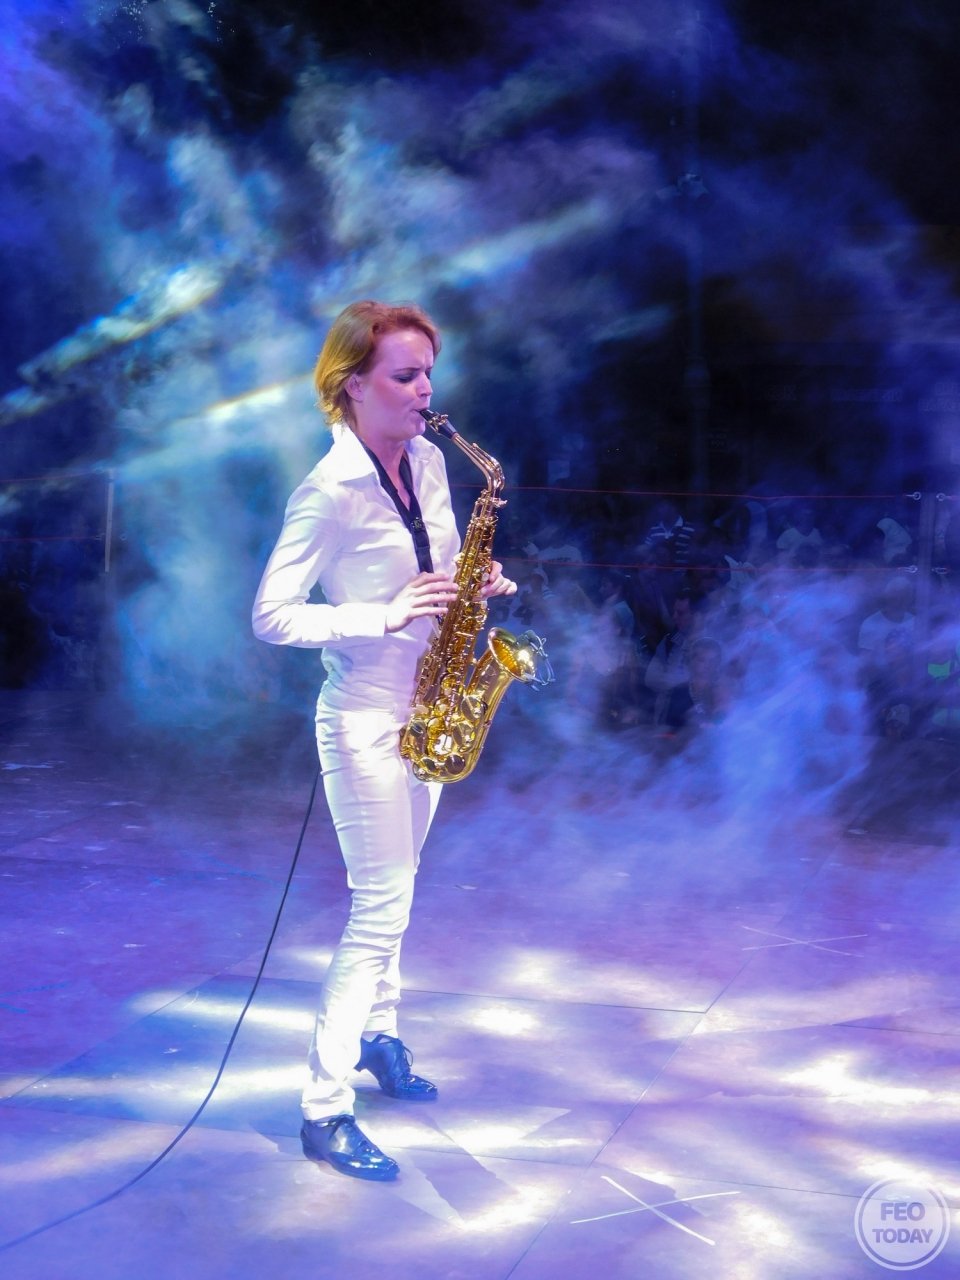 Фото концерта на День города 2017 и юбилей Айвазовского в Феодосии #2156